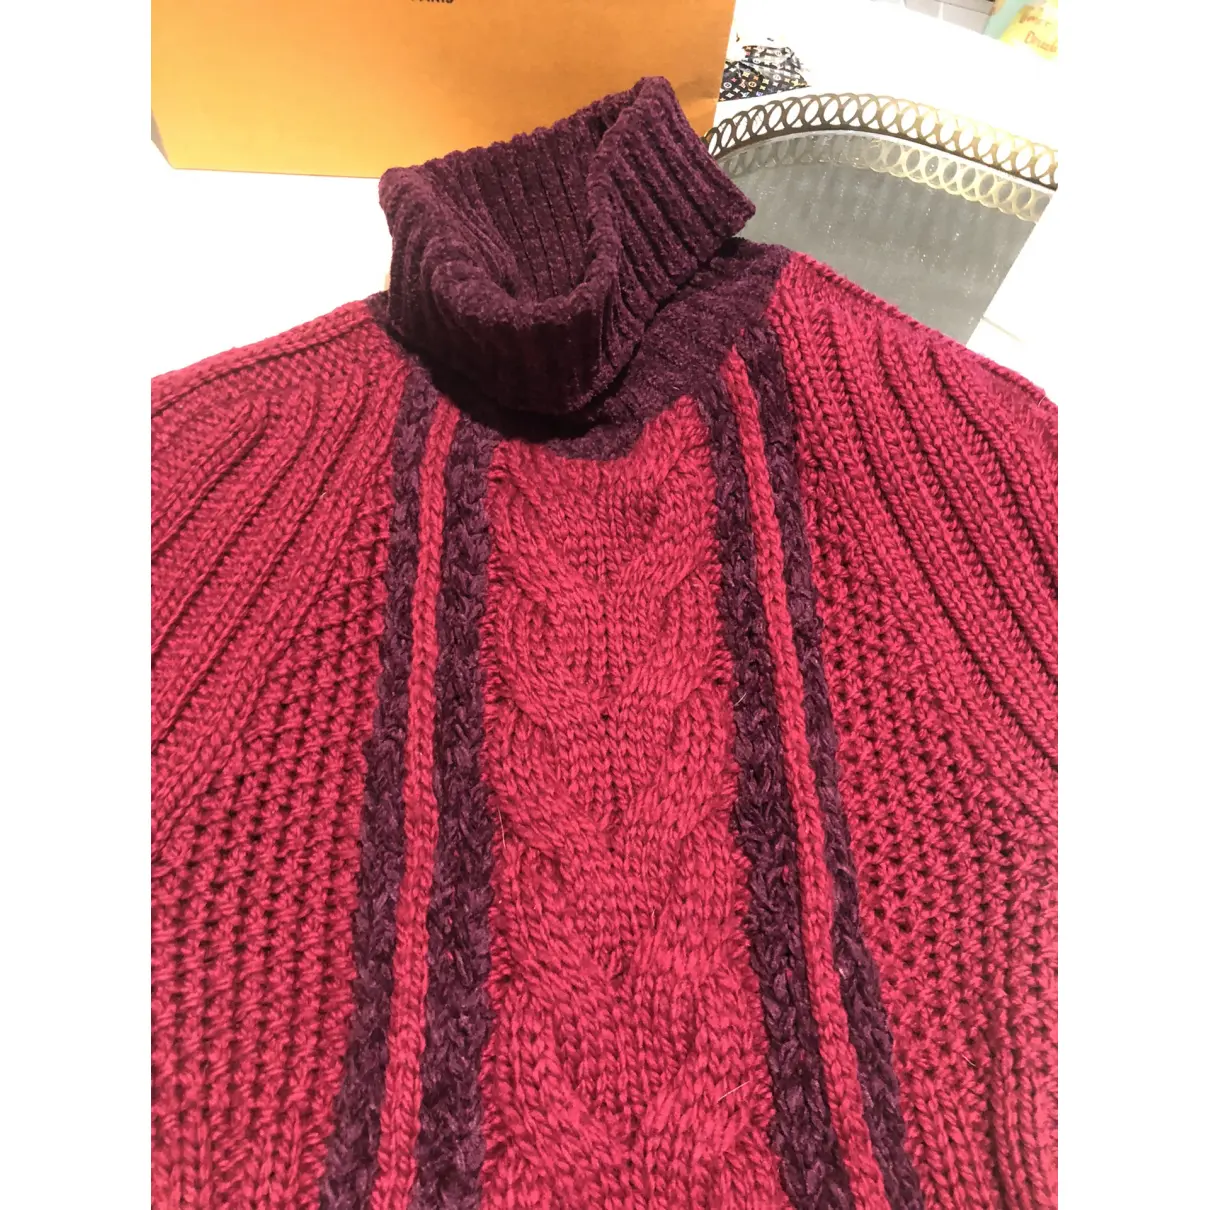 Buy Gianfranco Ferré Wool knitwear online